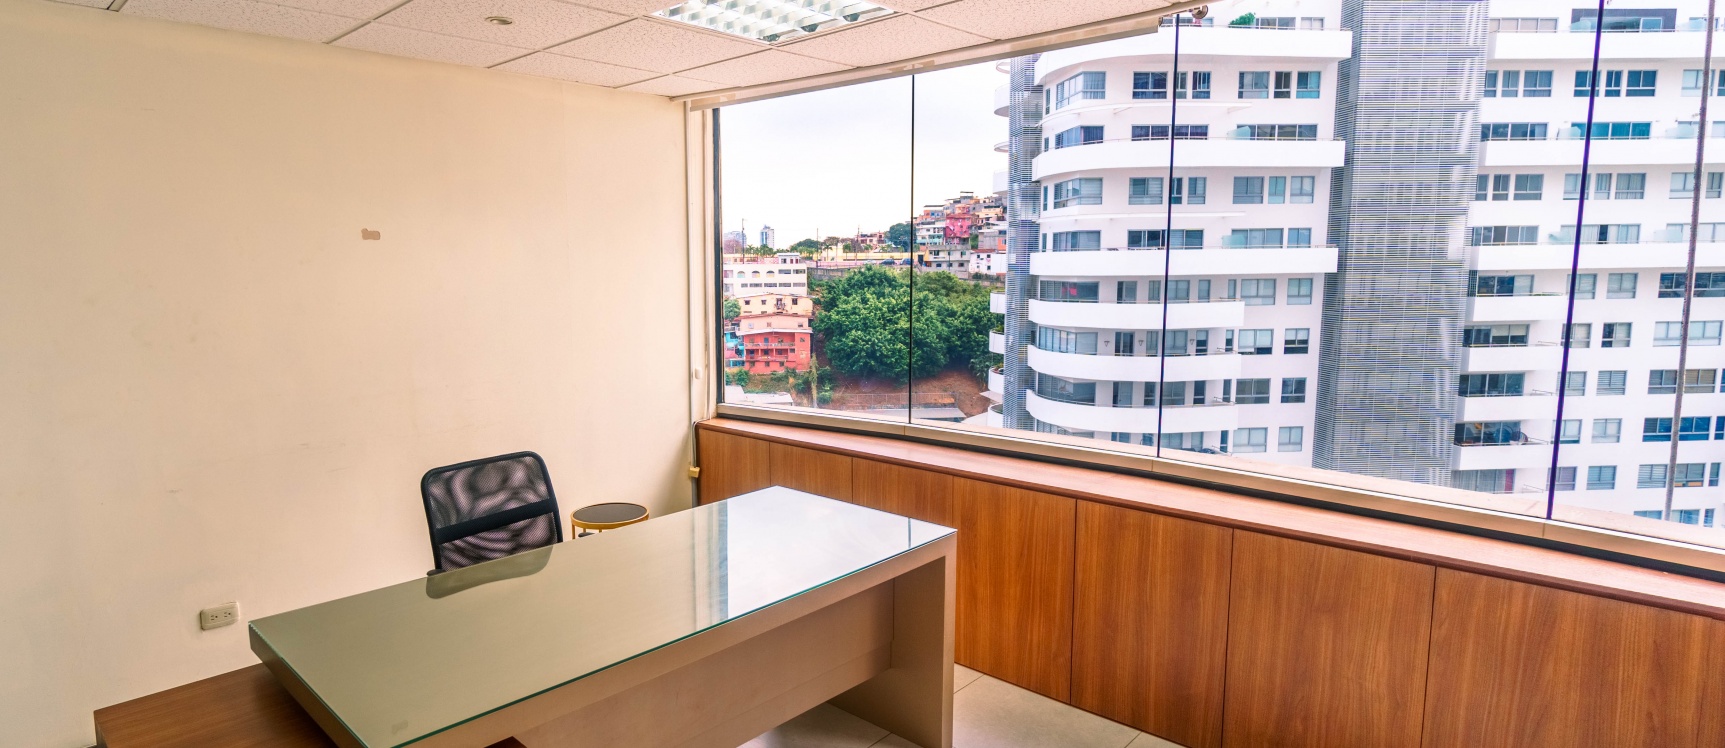 GeoBienes - Oficina amoblada en venta ubicada en el Edificio The Point - Plusvalia Guayaquil Casas de venta y alquiler Inmobiliaria Ecuador